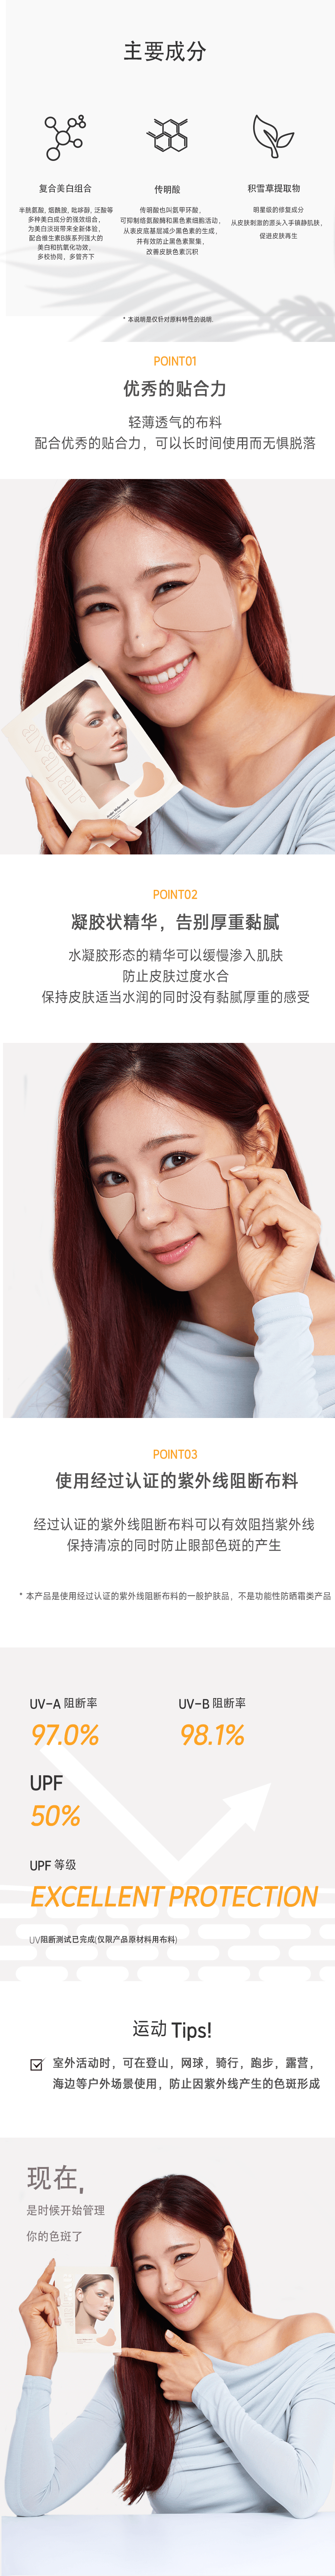 韓國AVAJAR美法扎 色斑貼10對(20片) 高爾夫戶外運動防曬貼 強效美白 淡化色斑眼貼 眼膜 韓國眼貼銷量第一